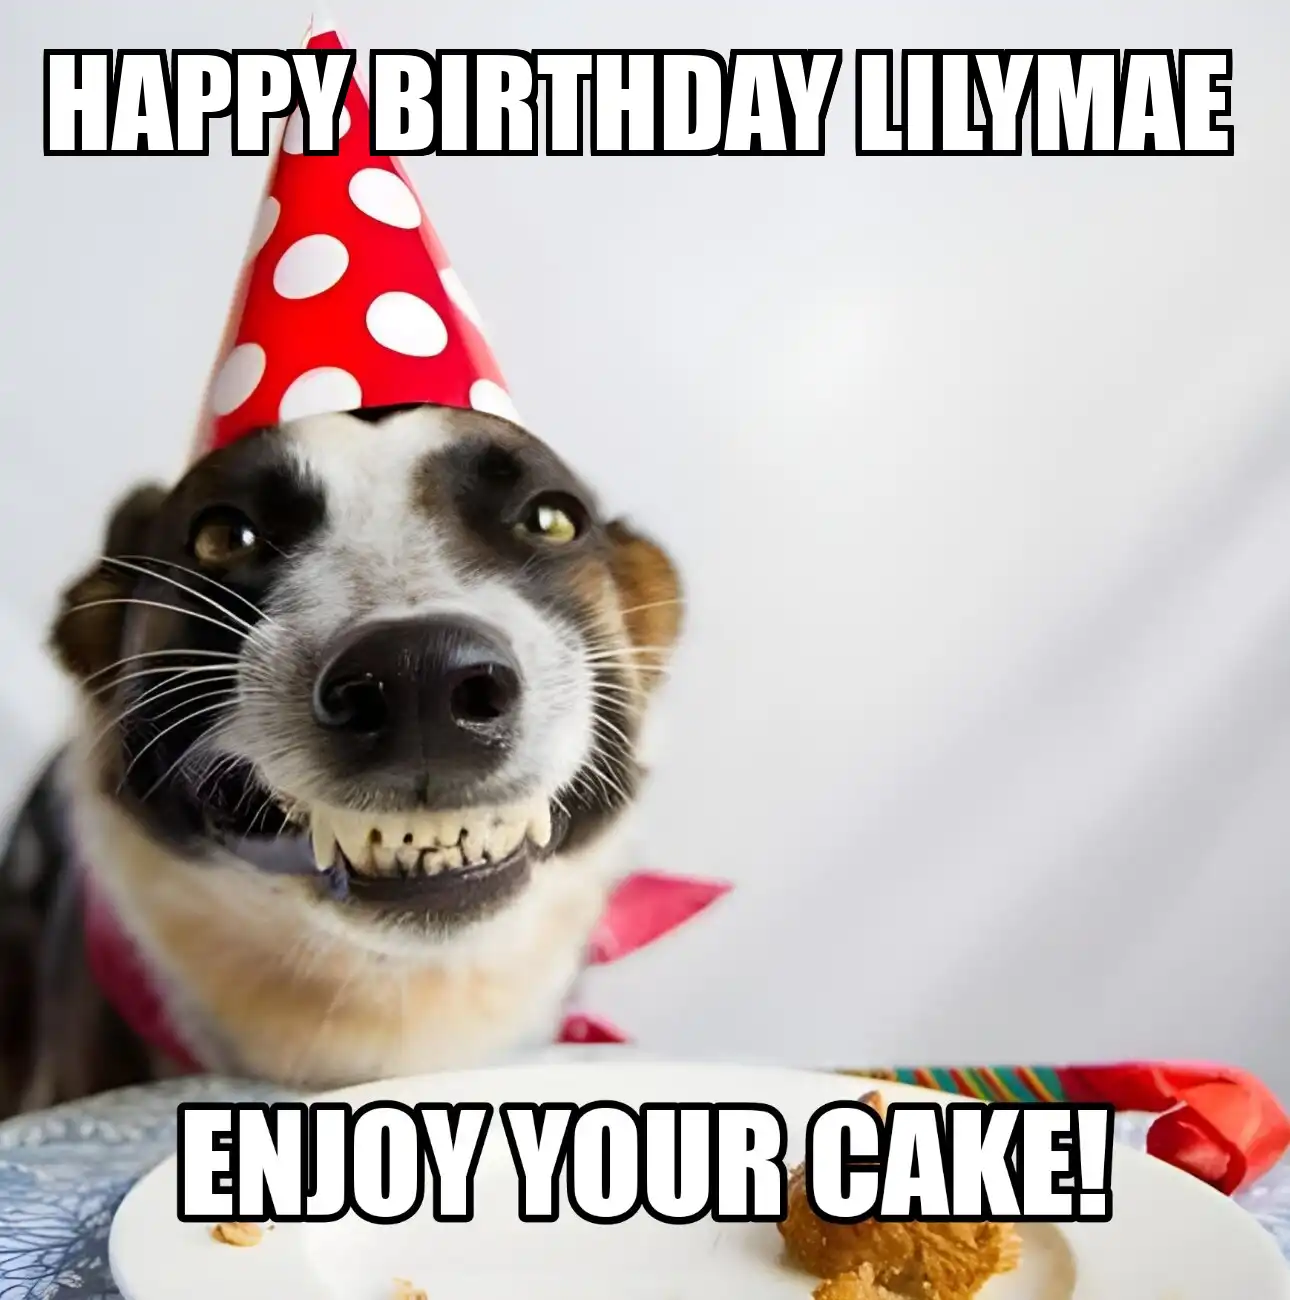 Happy Birthday Lilymae Enjoy Your Cake Dog Meme